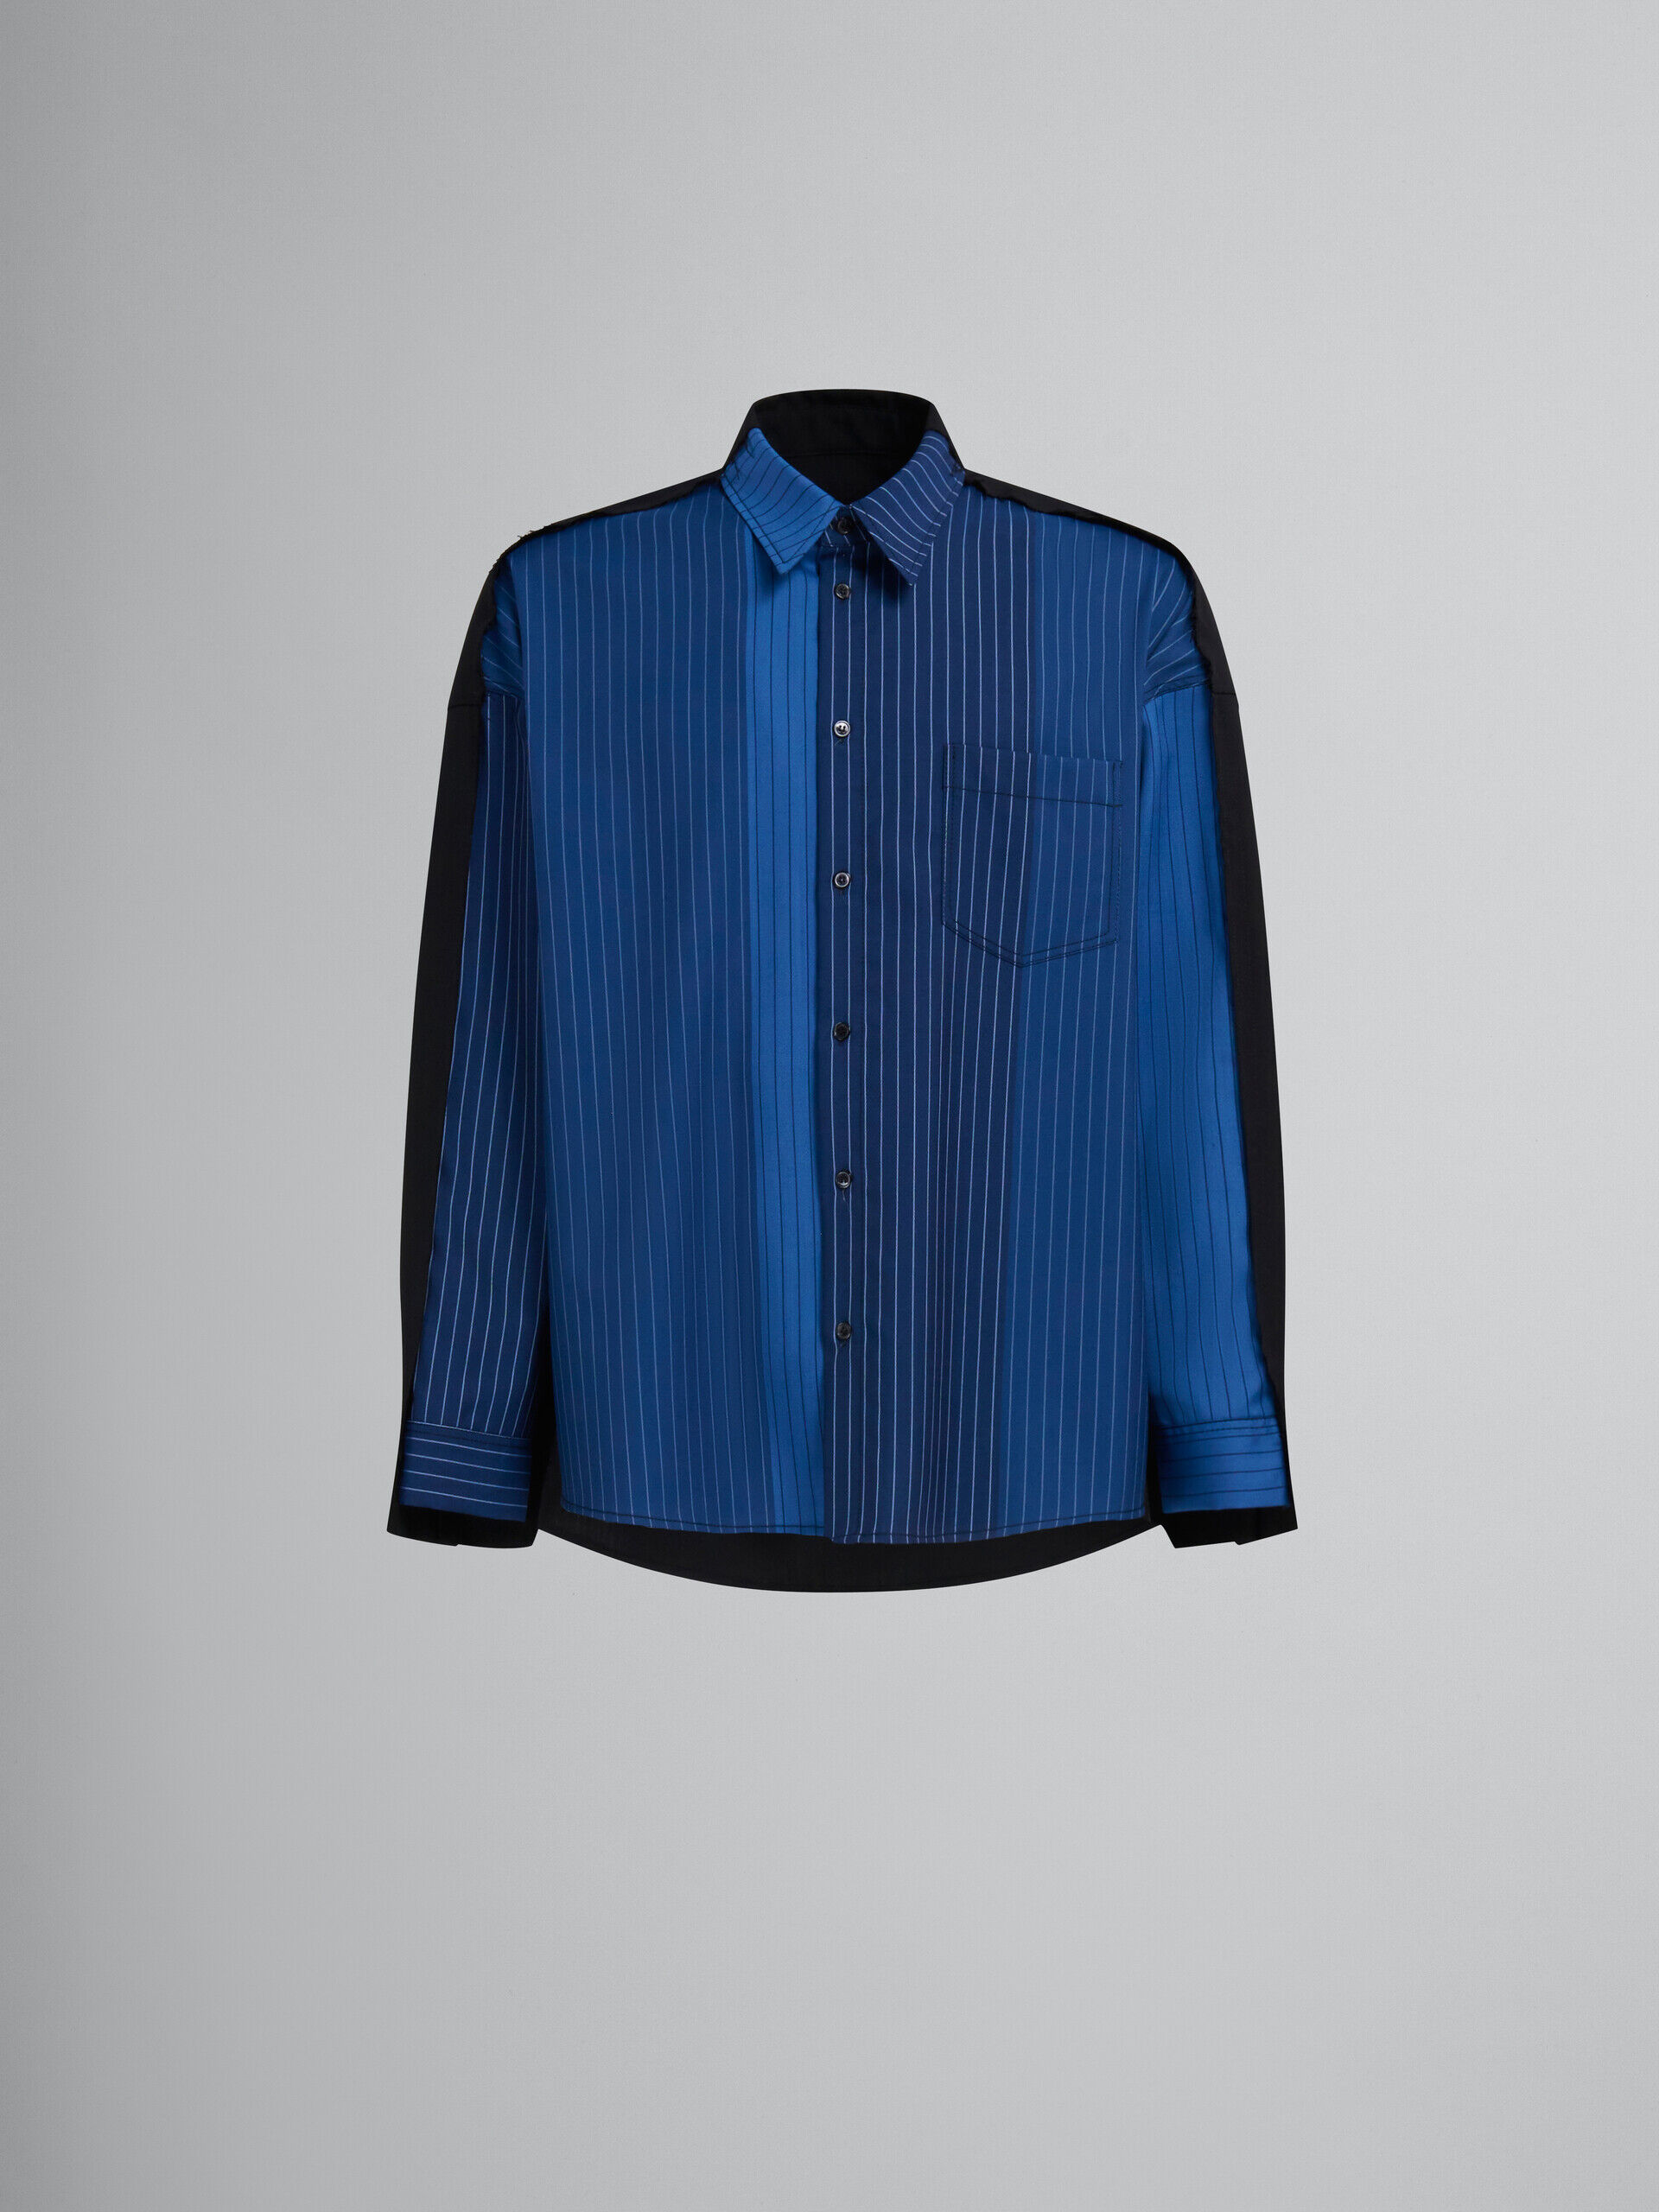 ブルー グラデーションピンストライプ ウール製シャツ、コントラスト